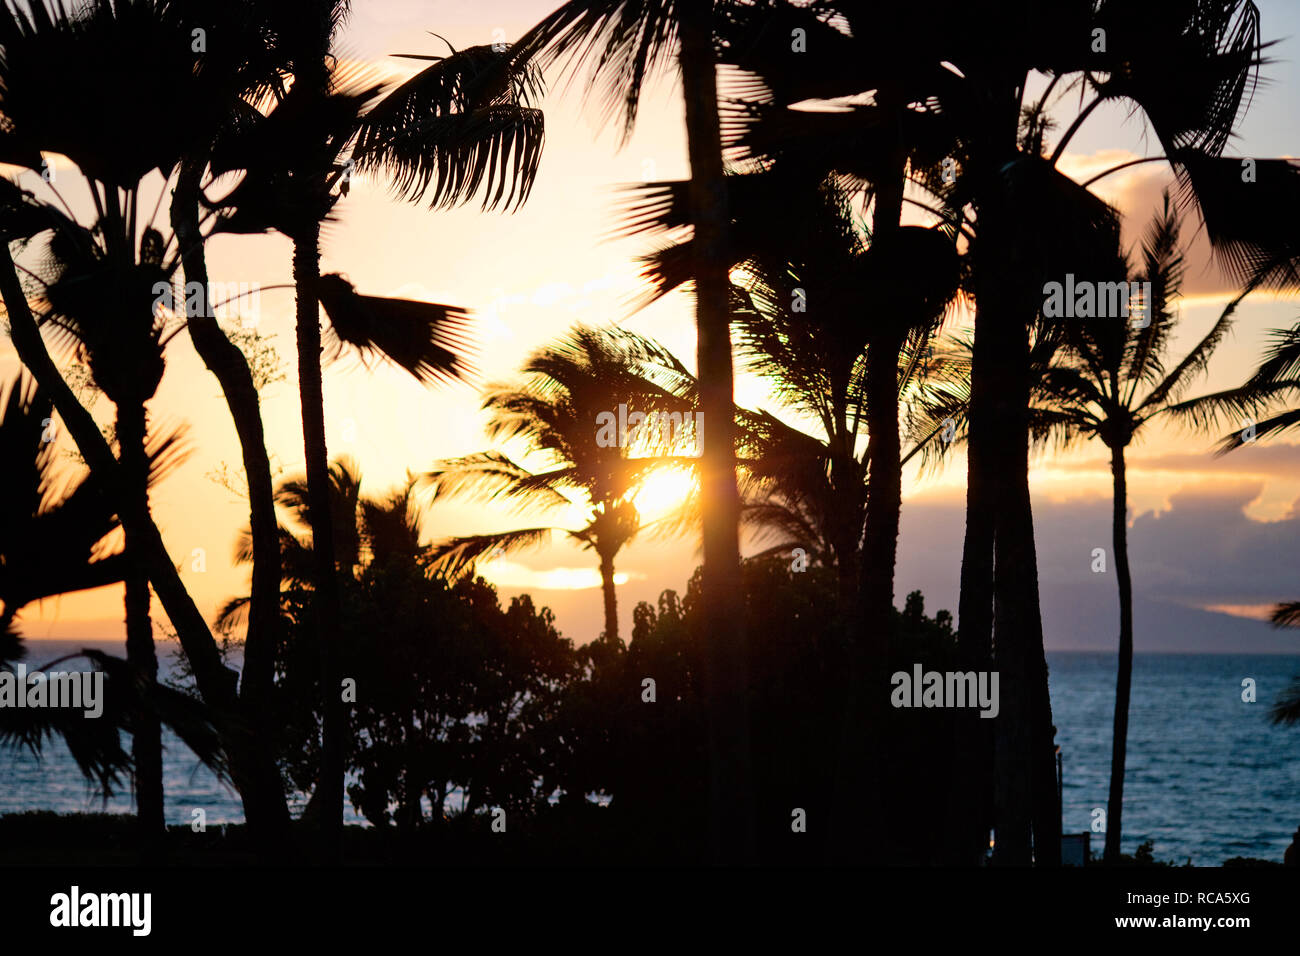 Palmen Silhouette gegen einen dramatischen Sonnenuntergang. Stockfoto